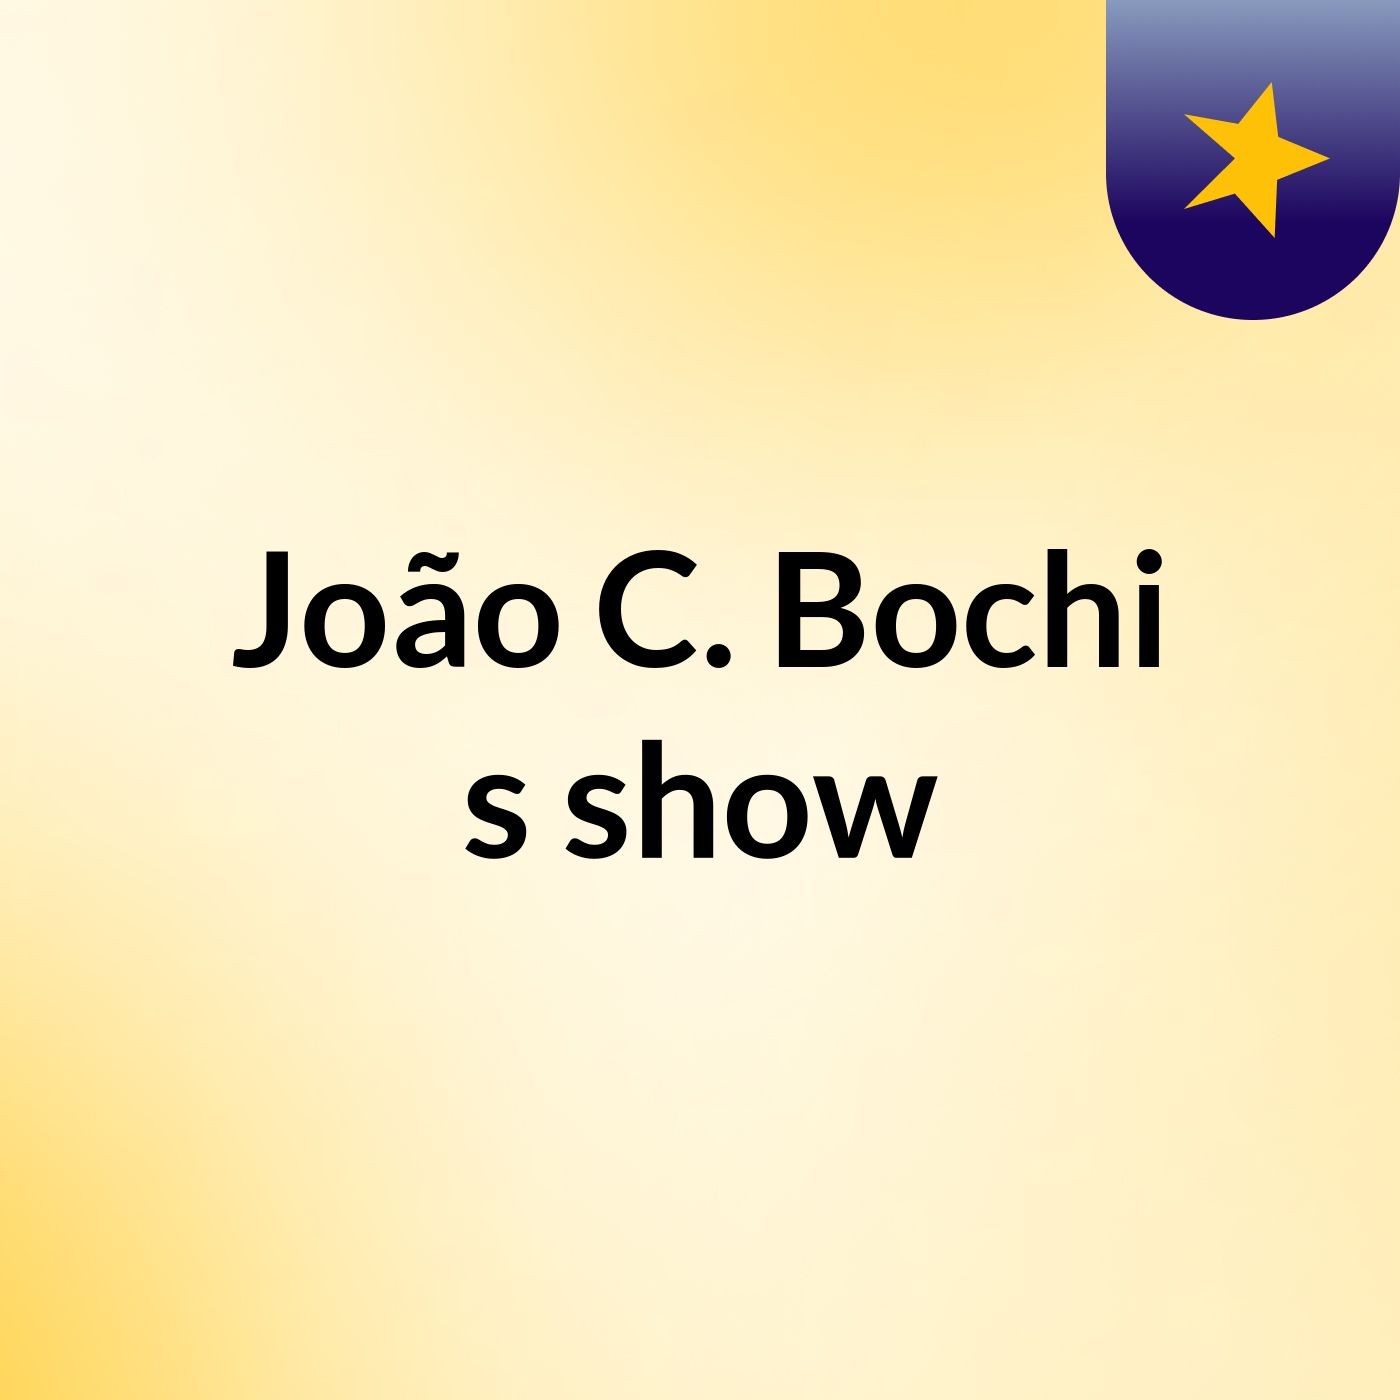 João C. Bochi's show